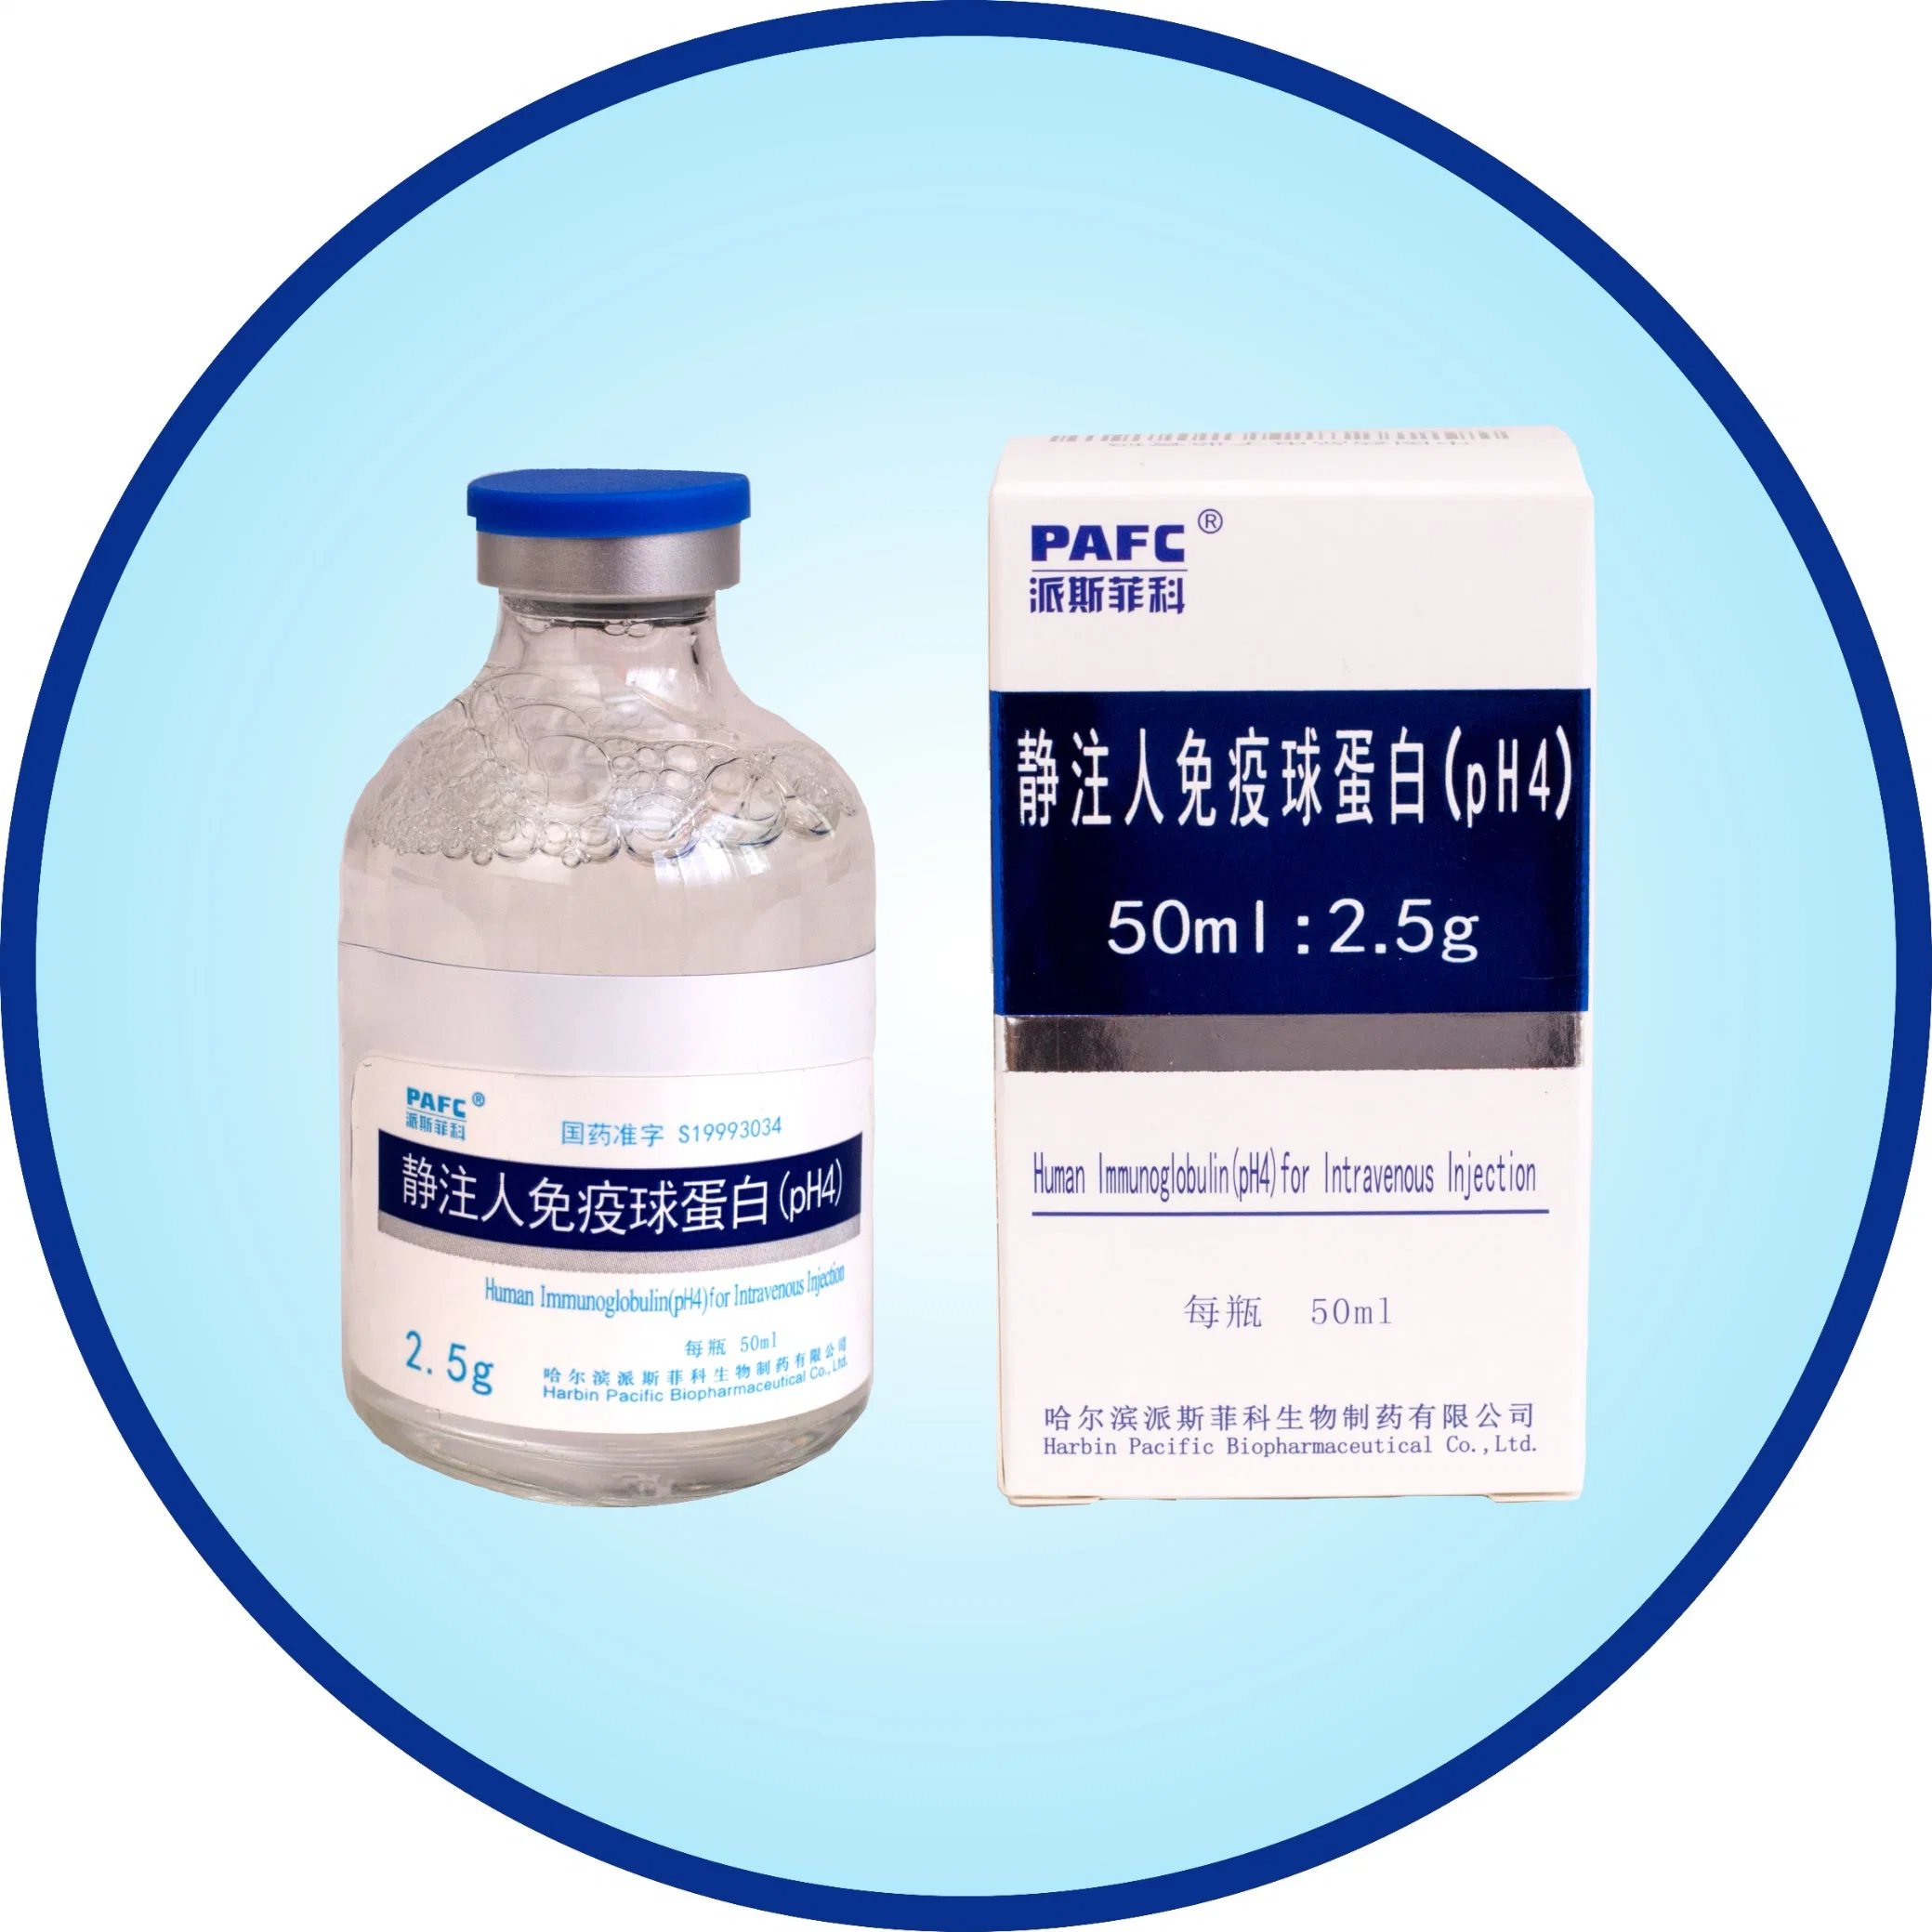 Producto biológico para mejorar la inmunoglobulina Immunity-Human (pH4) para la inyección intravenosa